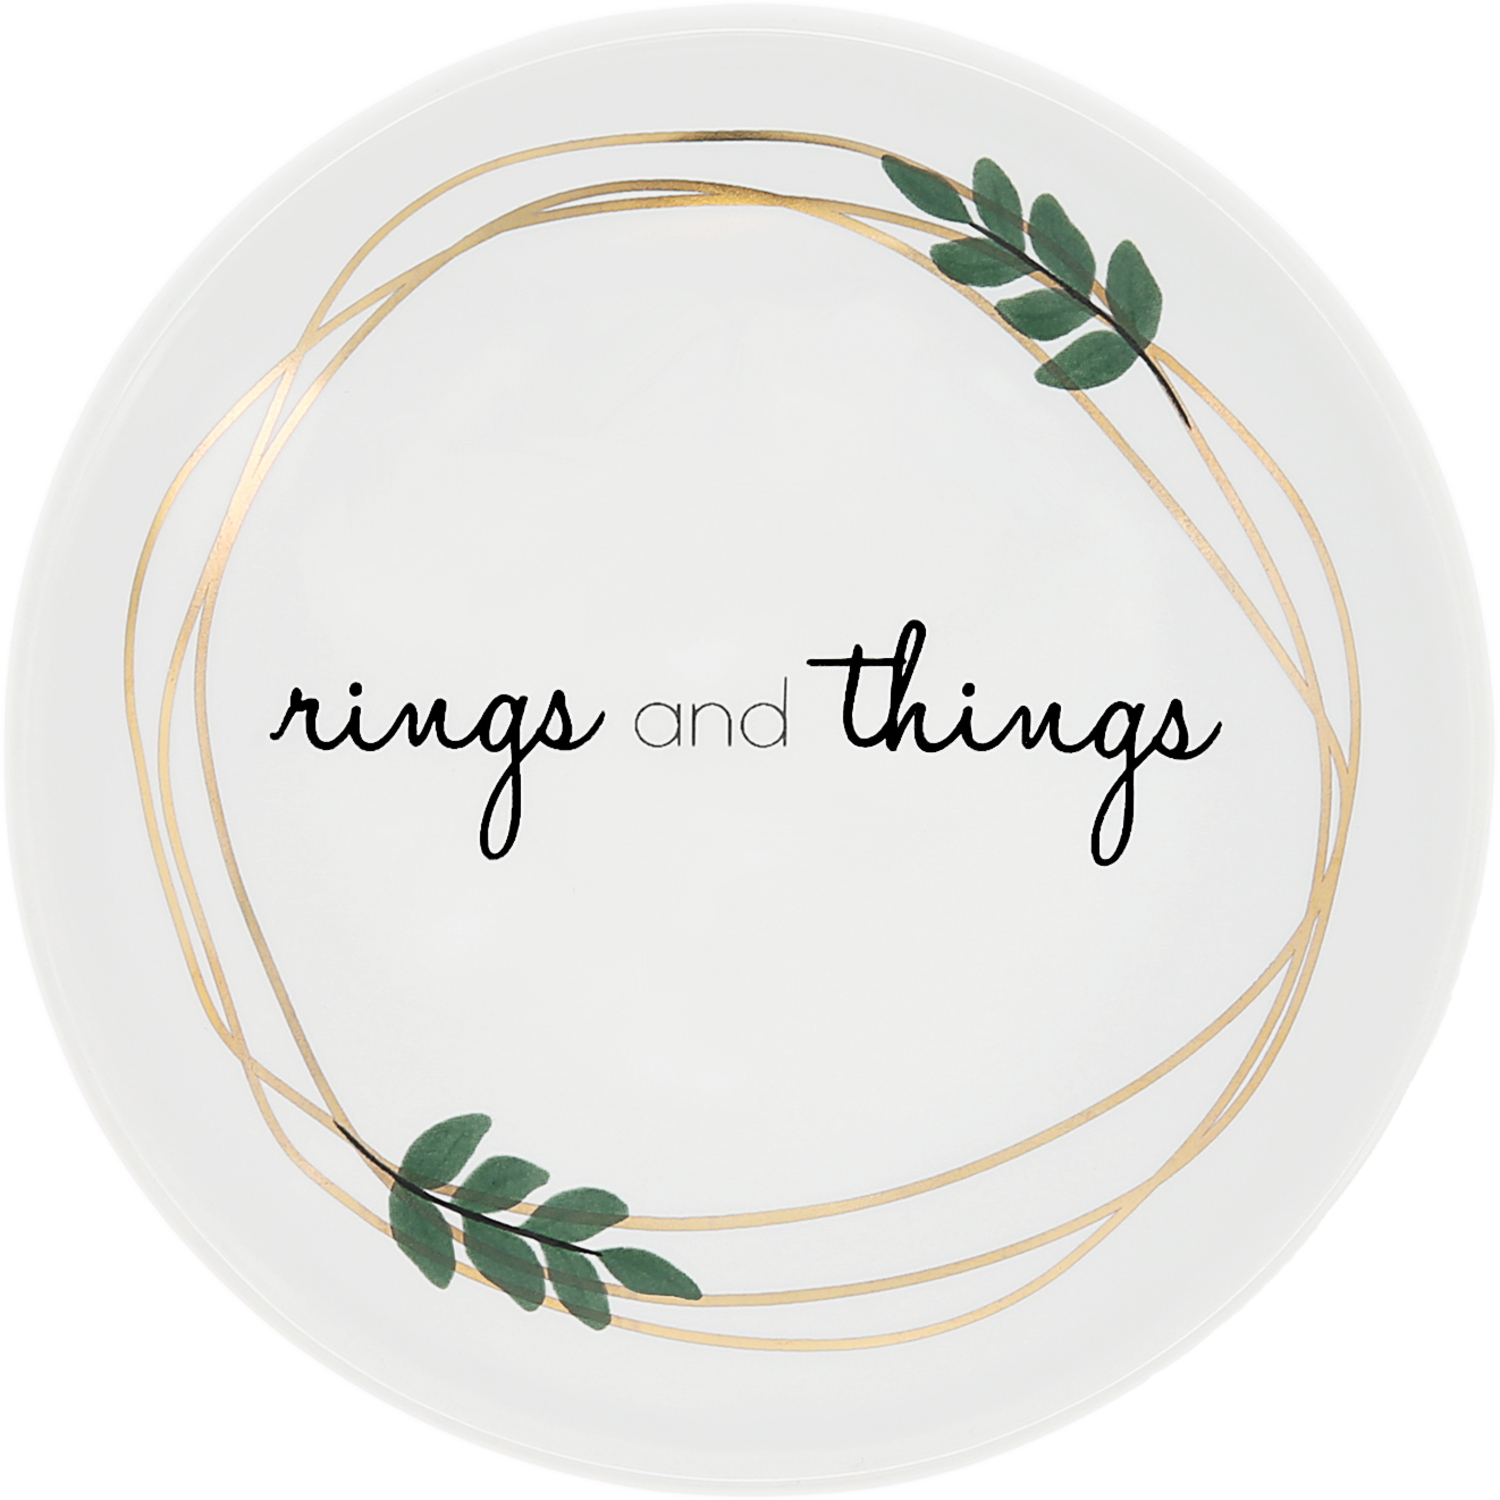 Rings and Things by Love Grows - Rings and Things - 4" Keepsake